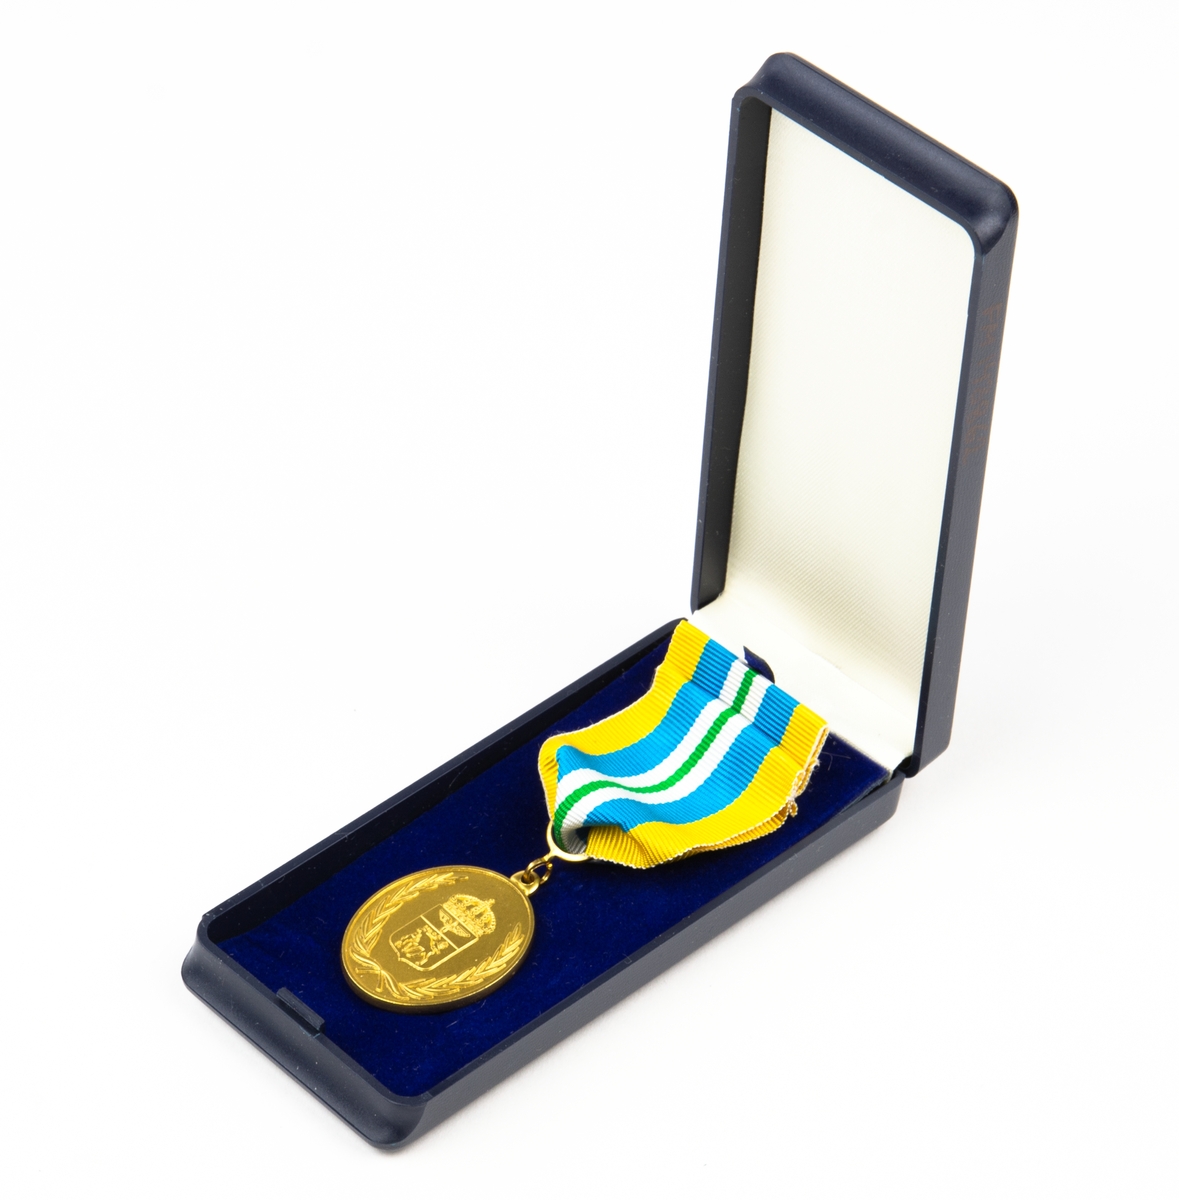 Jämtlands flygflottilj för förtjänst i guld. 1 st medalj och 1 st utmärkelsetecken.
Förvaras i originalask.